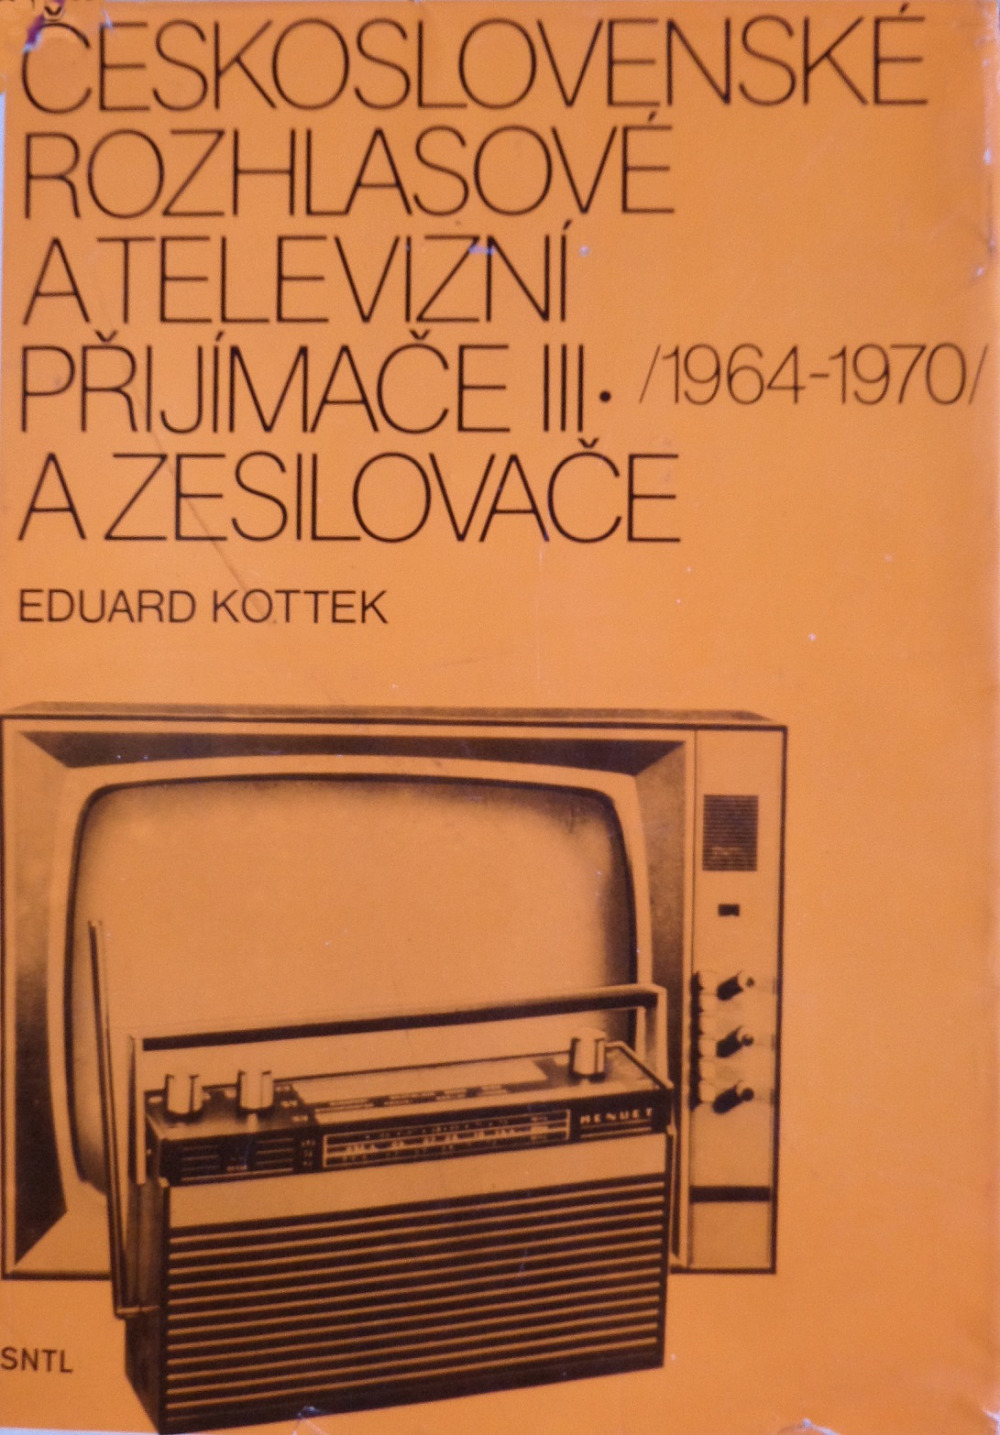 Československé rozhlasové a televizní přijímače III. (1964–1970) a zesilovače